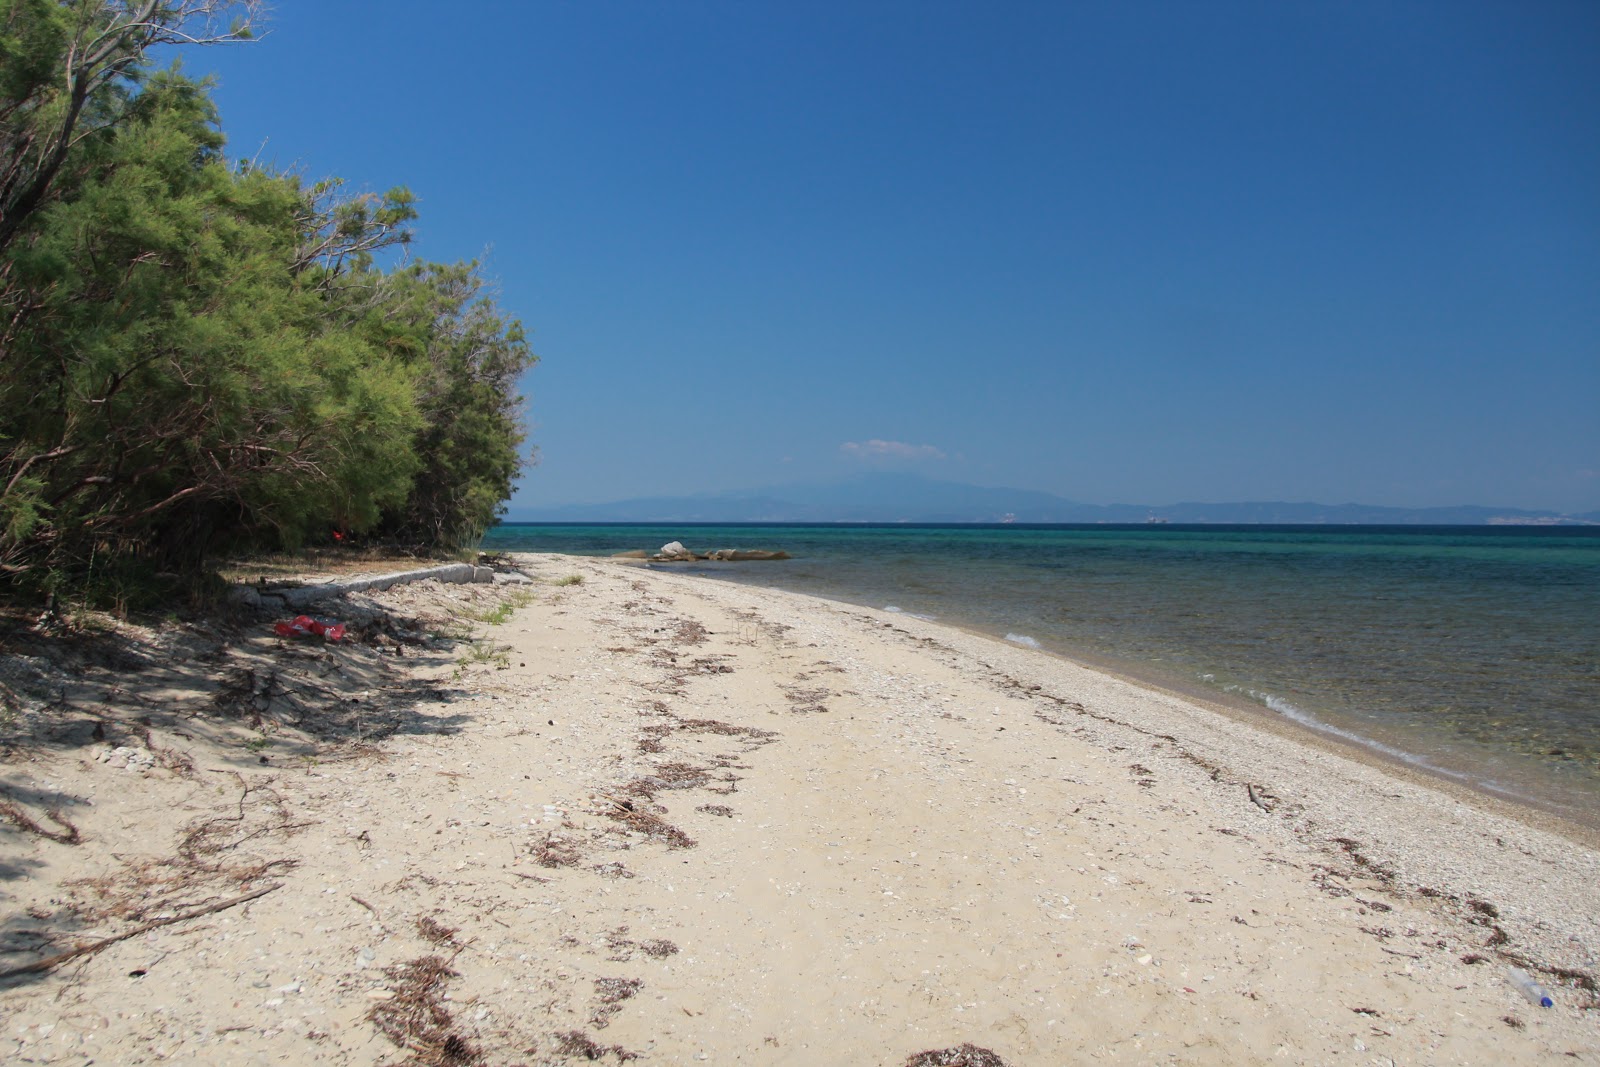 Fotografie cu Prinou beach - locul popular printre cunoscătorii de relaxare